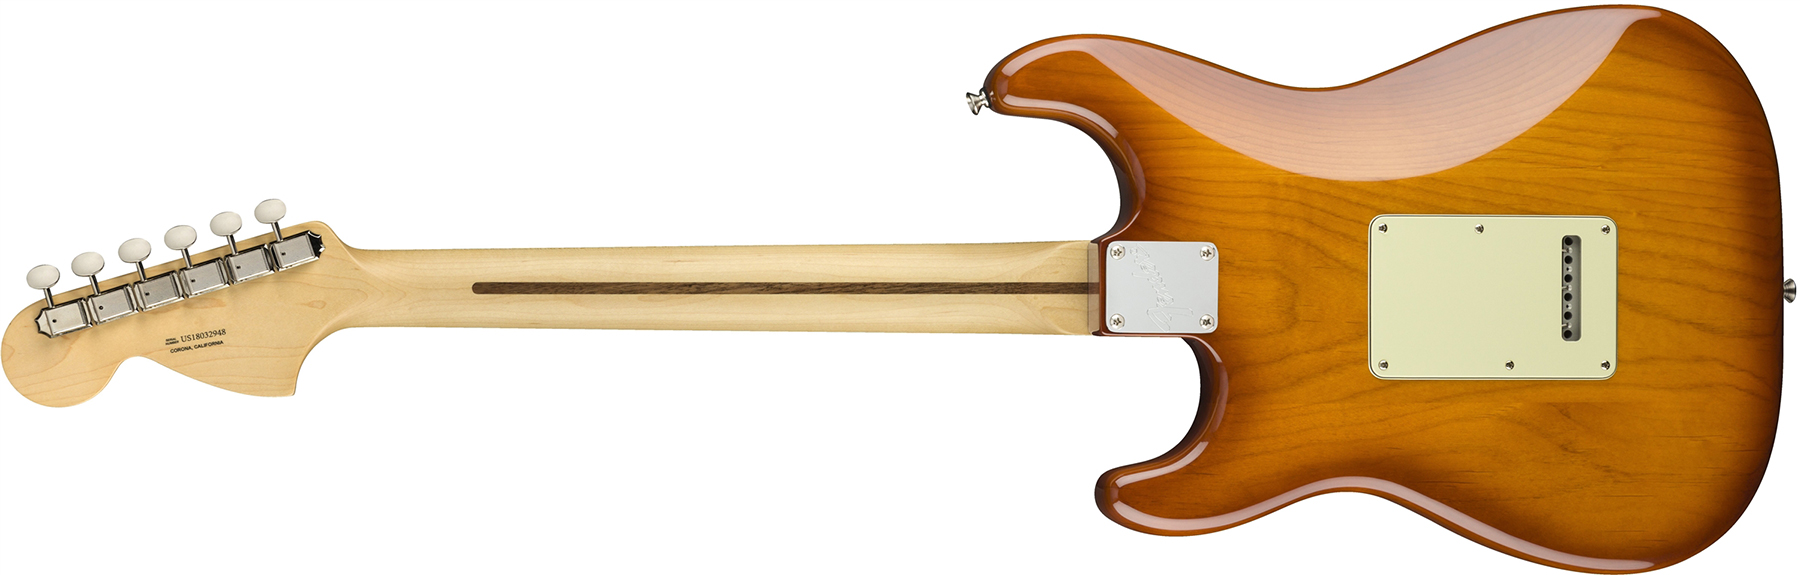 Fender Strat American Performer Usa Sss Rw - Honey Burst - Guitarra eléctrica con forma de str. - Variation 4